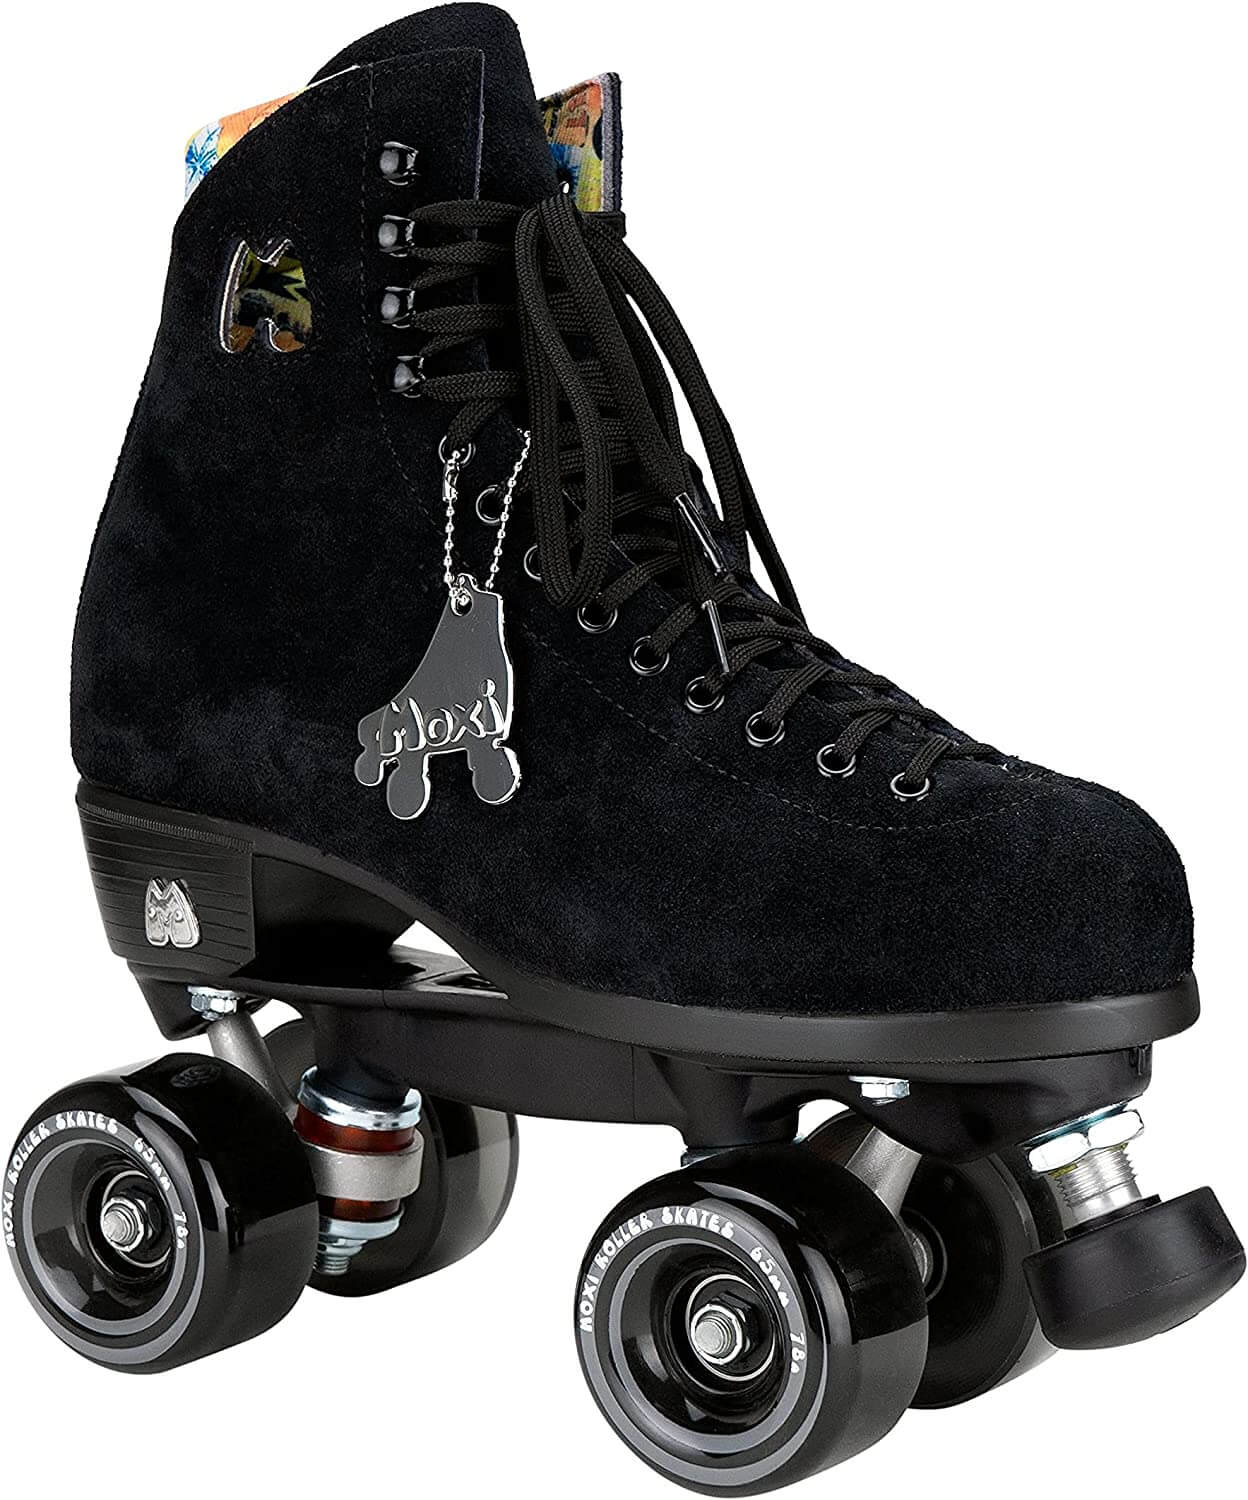 Moxi Skates Lolly Roller Skates, best roller skates